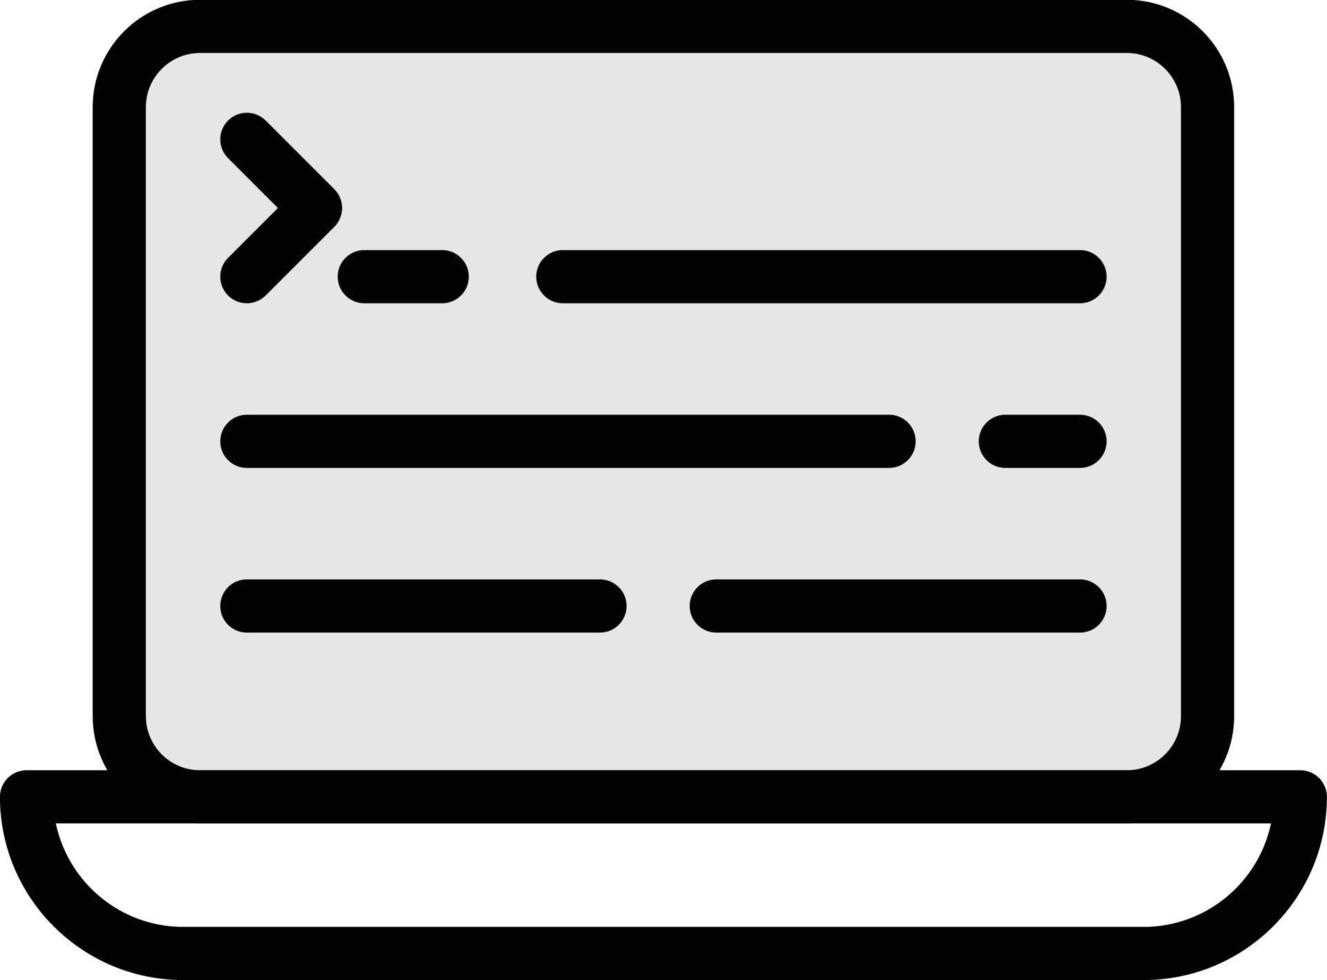 codificación de ilustración de vector de computadora portátil en un fondo. símbolos de calidad premium. iconos vectoriales para concepto y diseño gráfico.